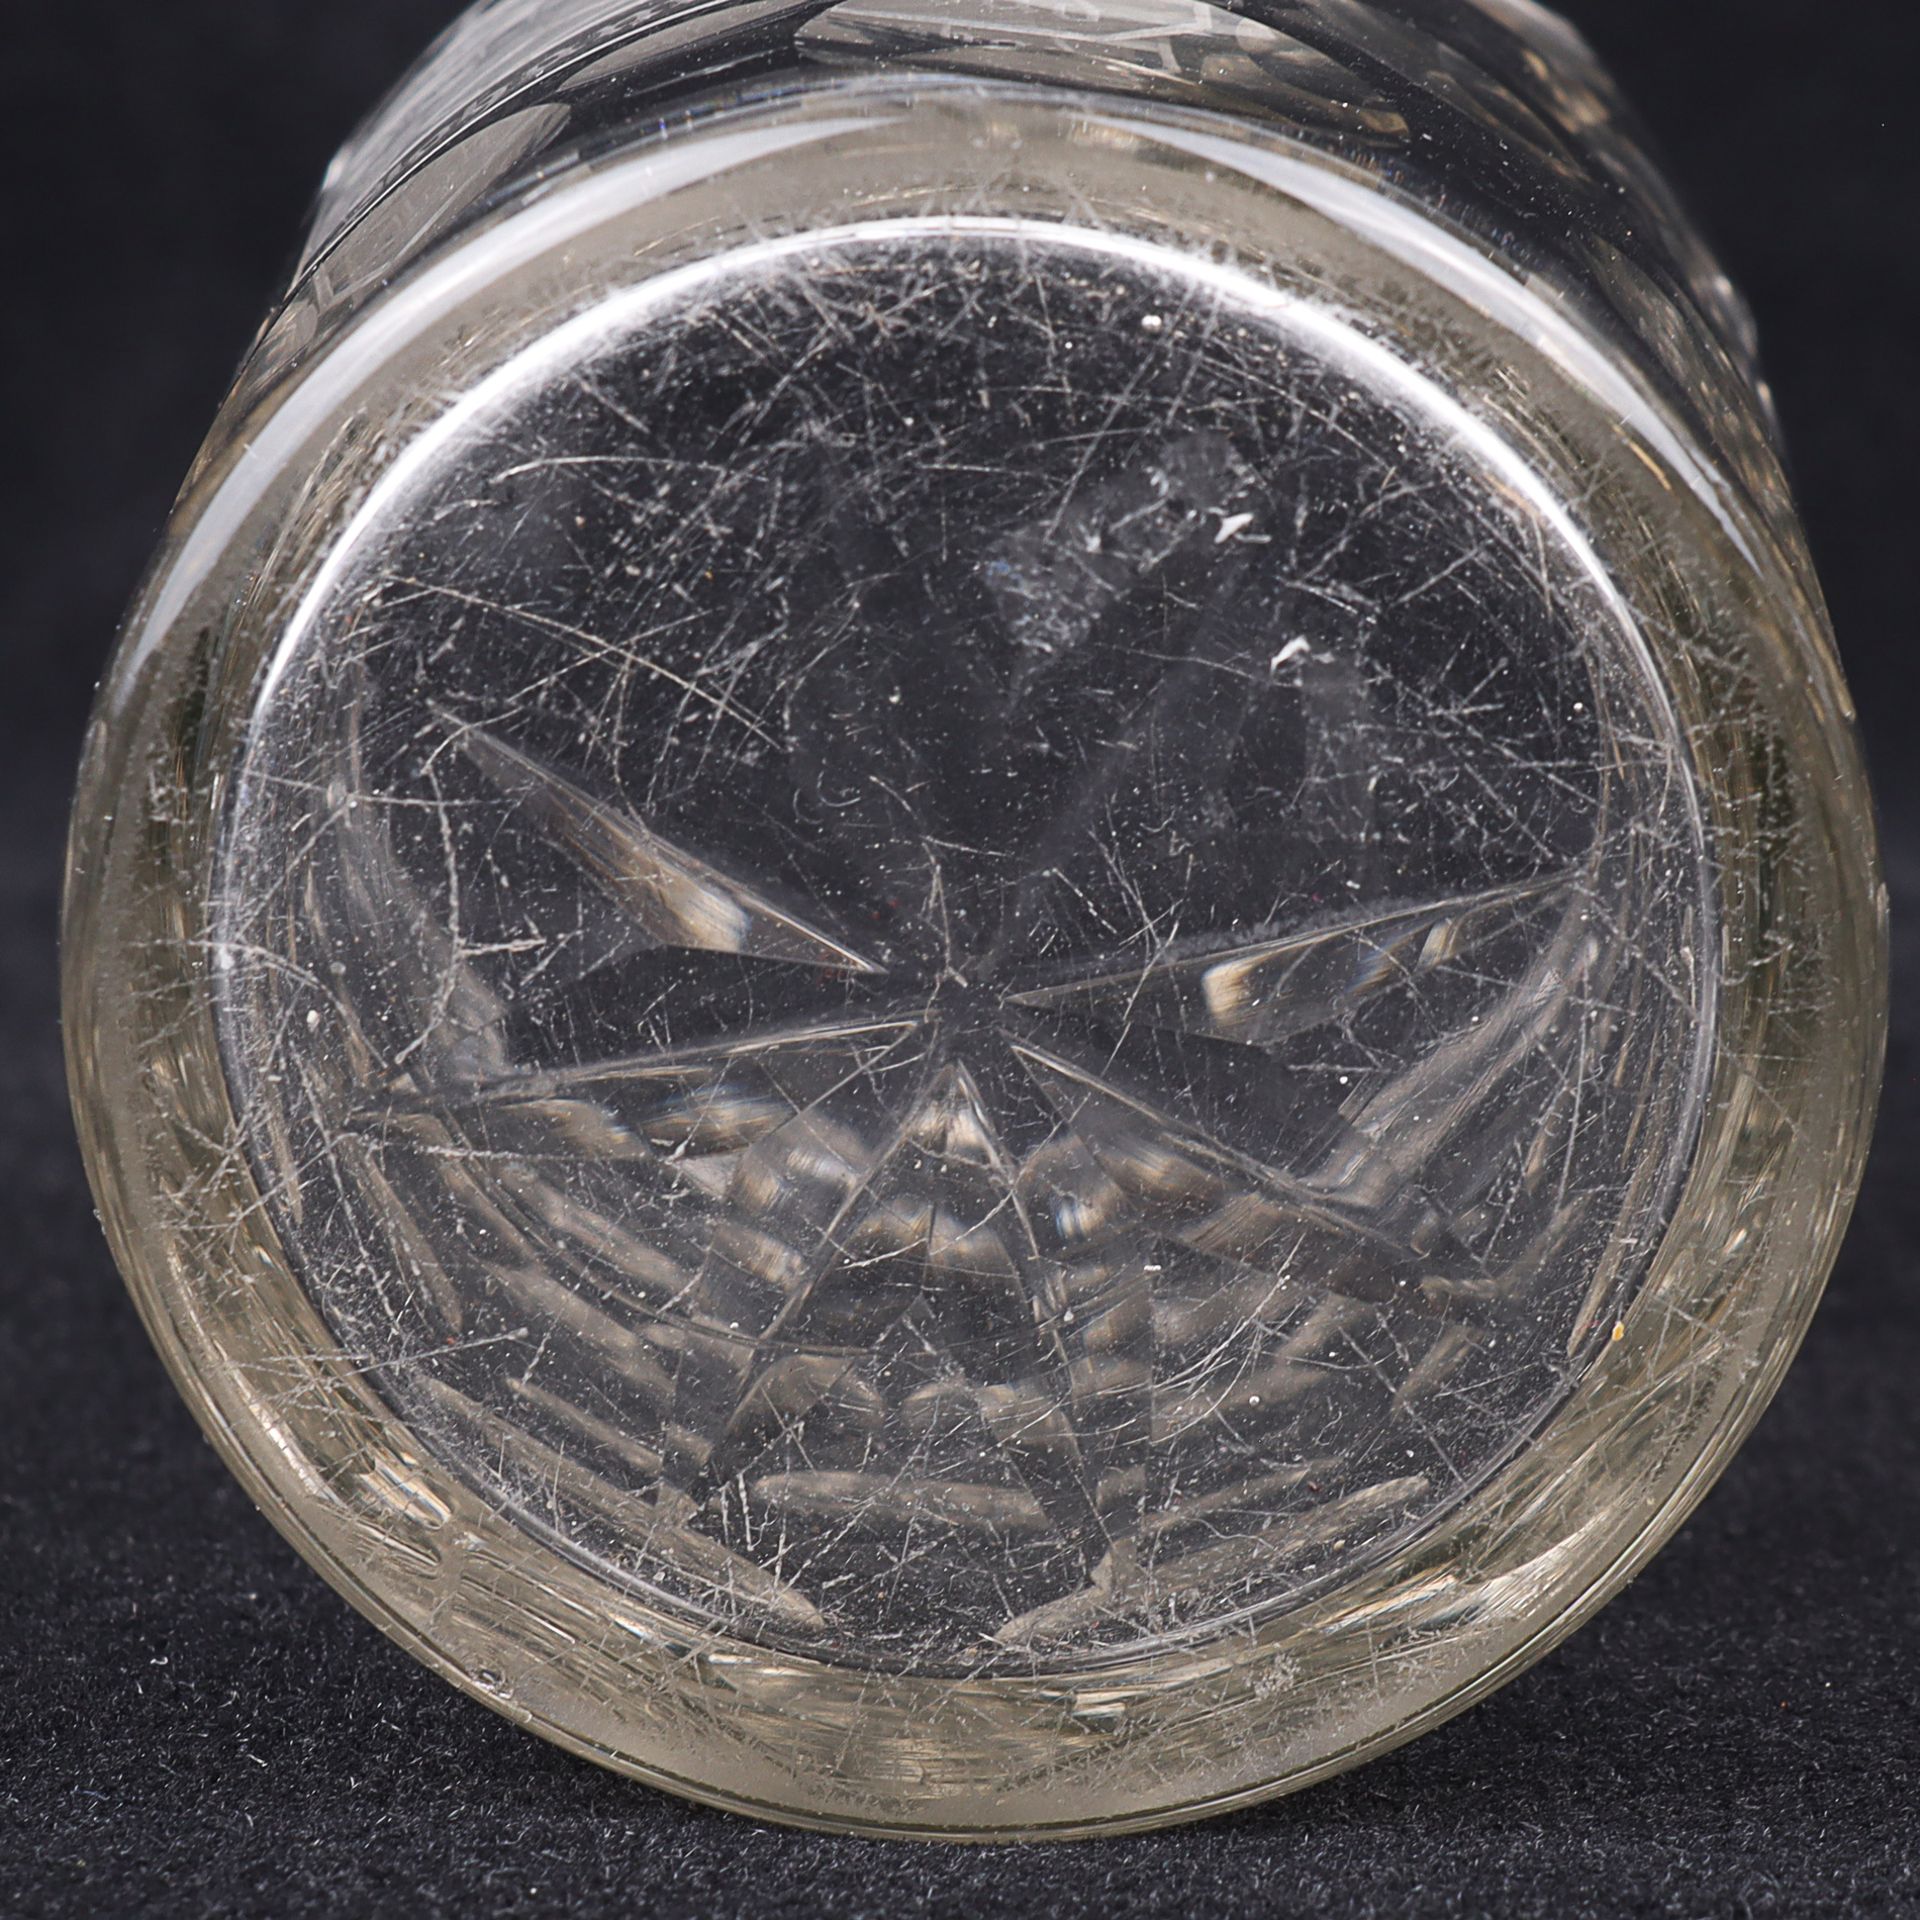 Bäderglas - Image 4 of 4